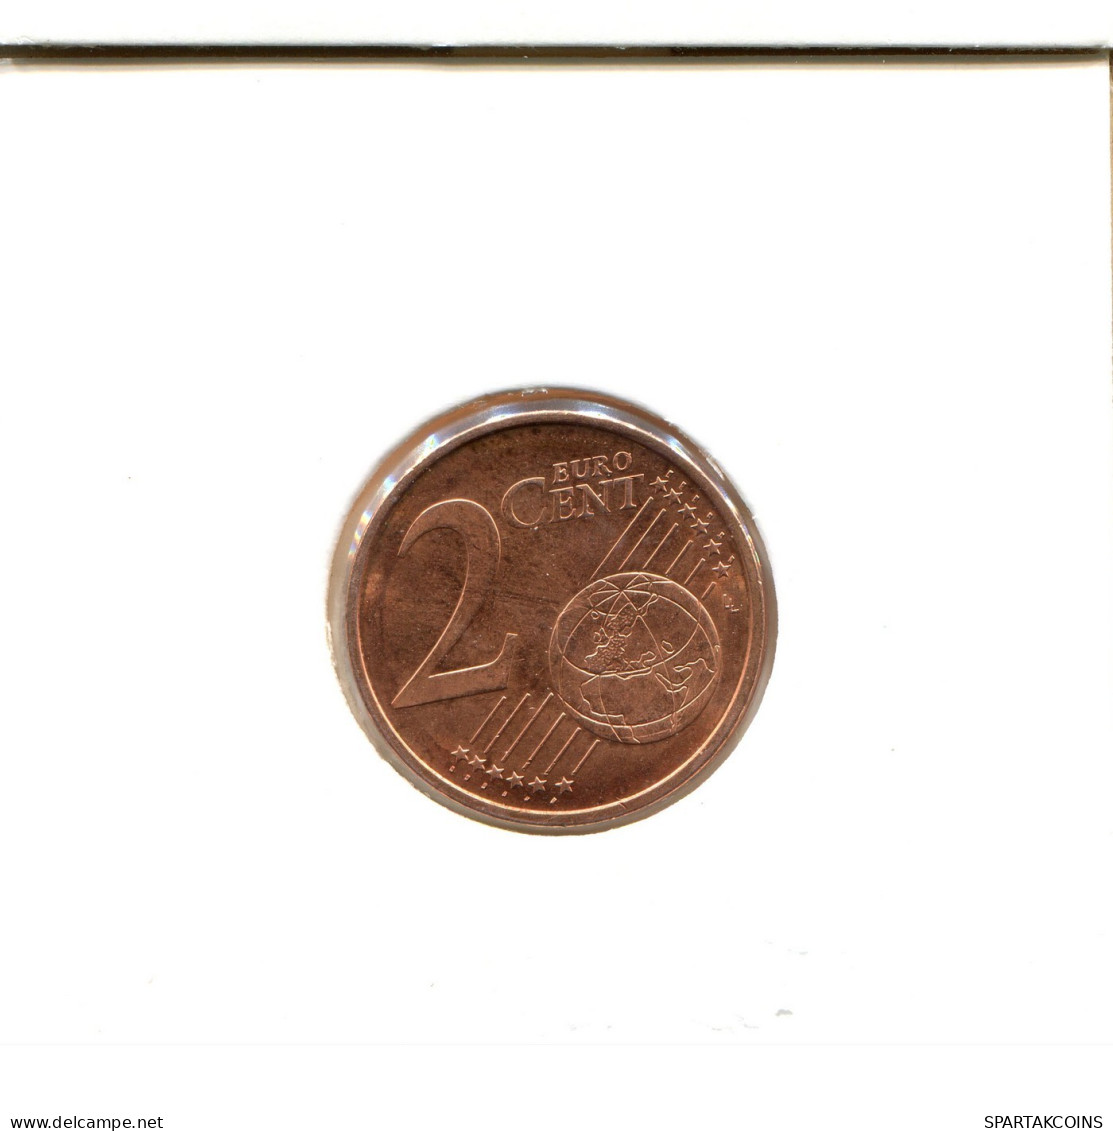 2 EURO CENTS 2013 FINLAND Coin #EU084.U.A - Finland